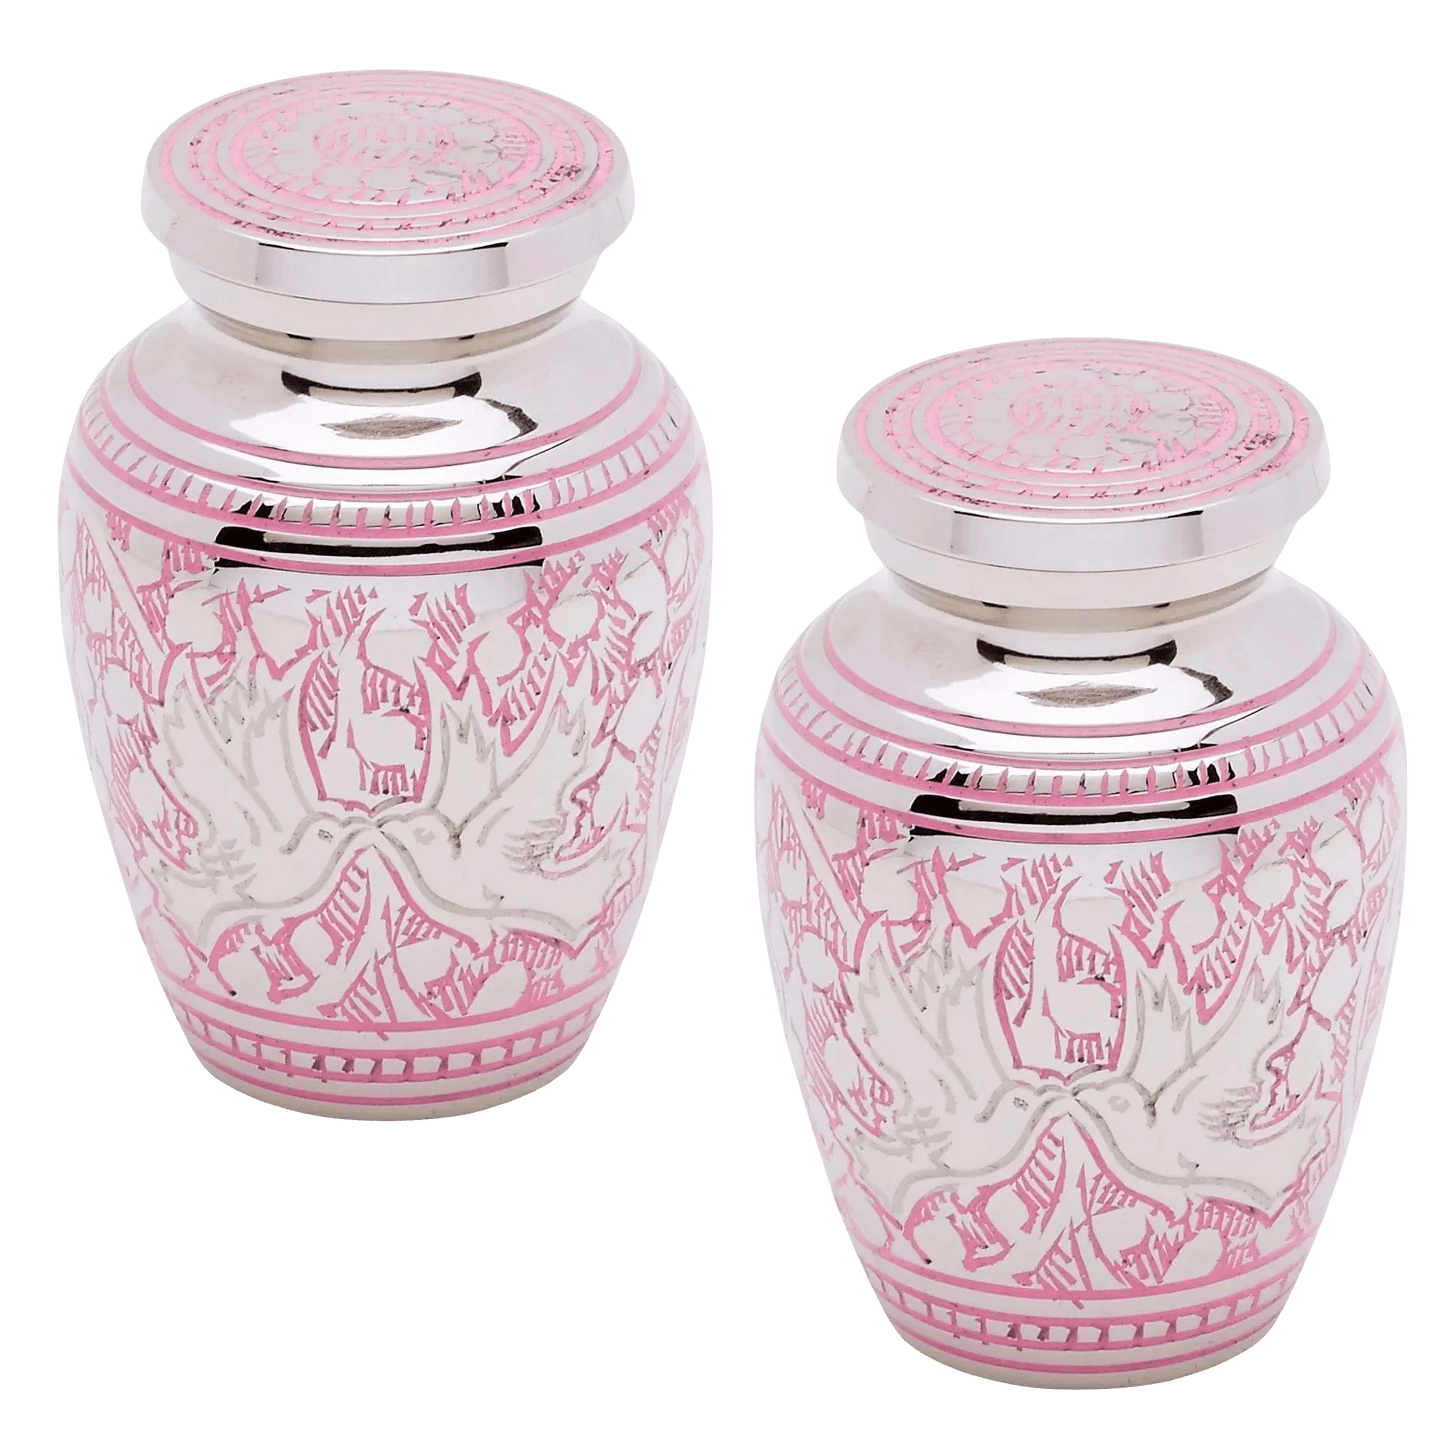 Pair of Keepsake Urns - Pink Loving Doves | Dover Brass Urns